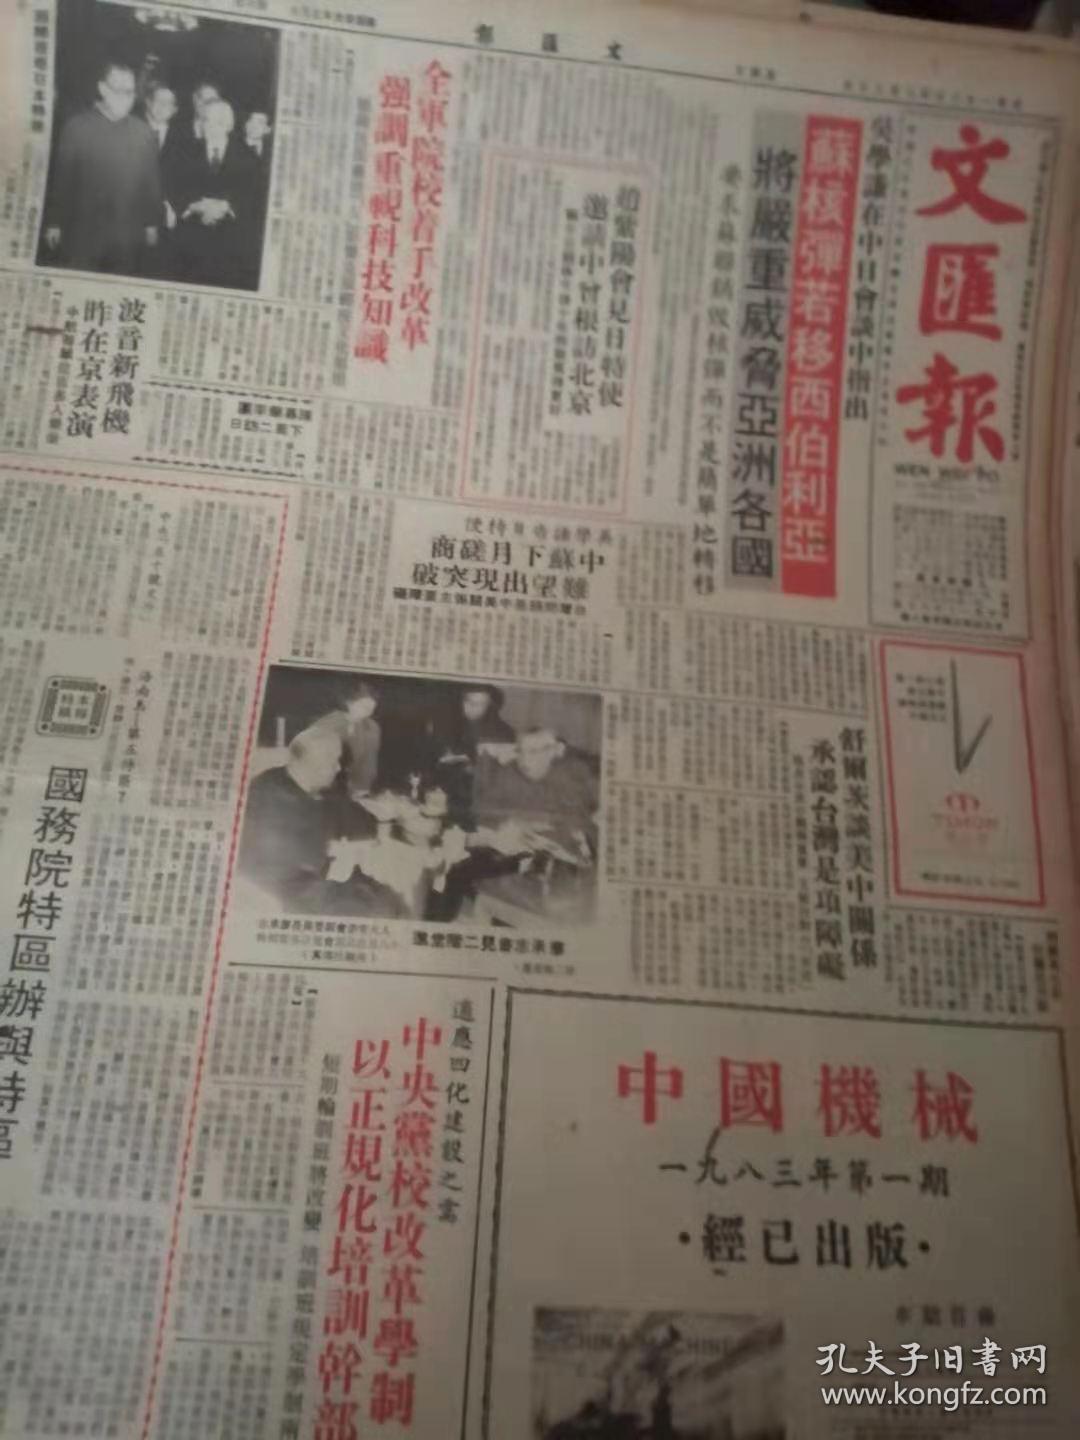 香港文汇报1983年2月散报1.2.8.17.19.20.22,21.24.25合售